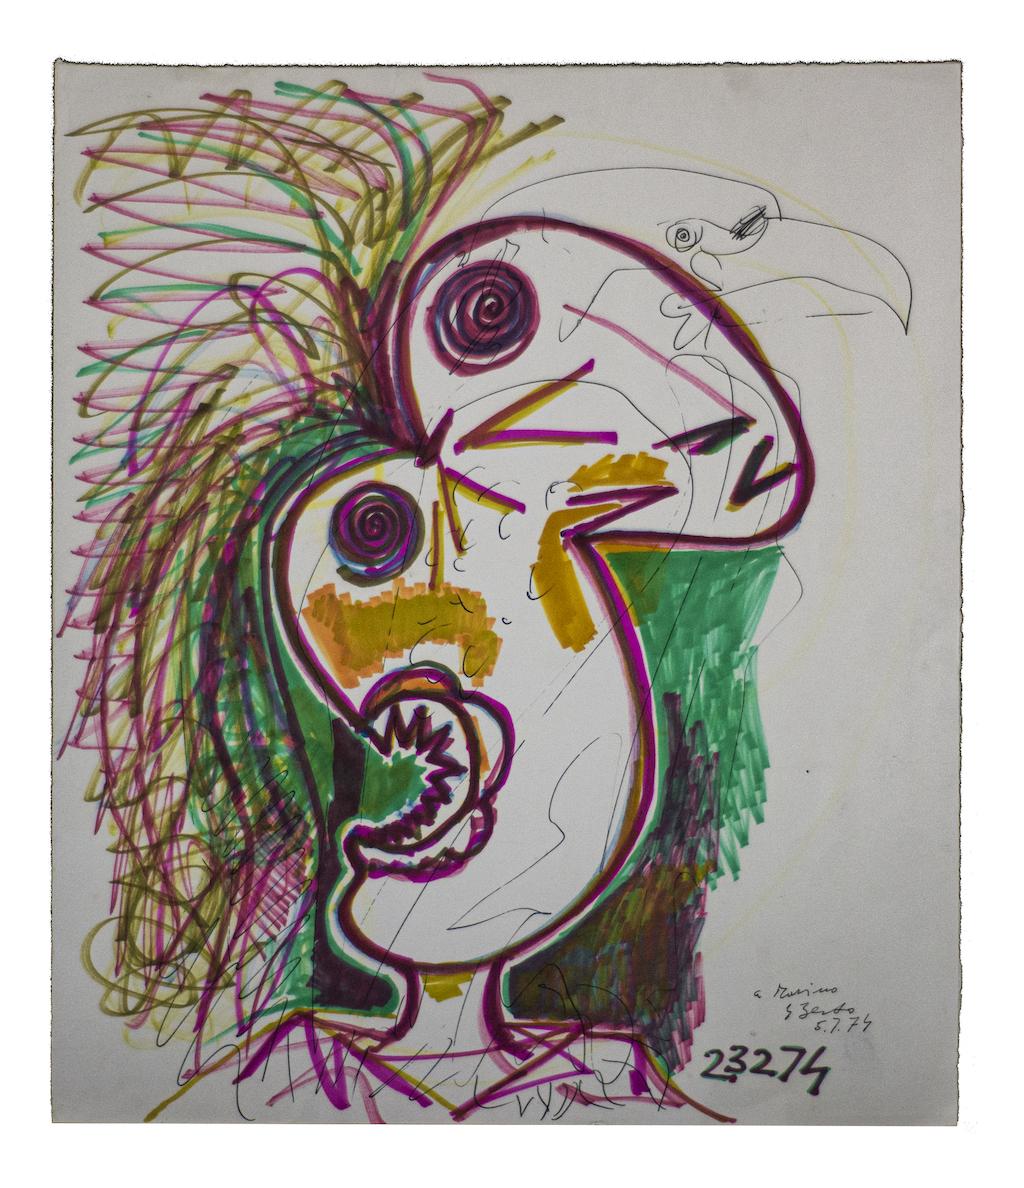 Der Paradiesvogel ist eine Originalzeichnung in Mischtechnik von Gian Paolo Berto aus dem Jahr 1974.

Gute Bedingungen.

Rechts unten handsigniert.

Inklusive Rahmen: 53.5 x 48

Das Kunstwerk stellt den Vogel durch kräftige Striche und fröhliche